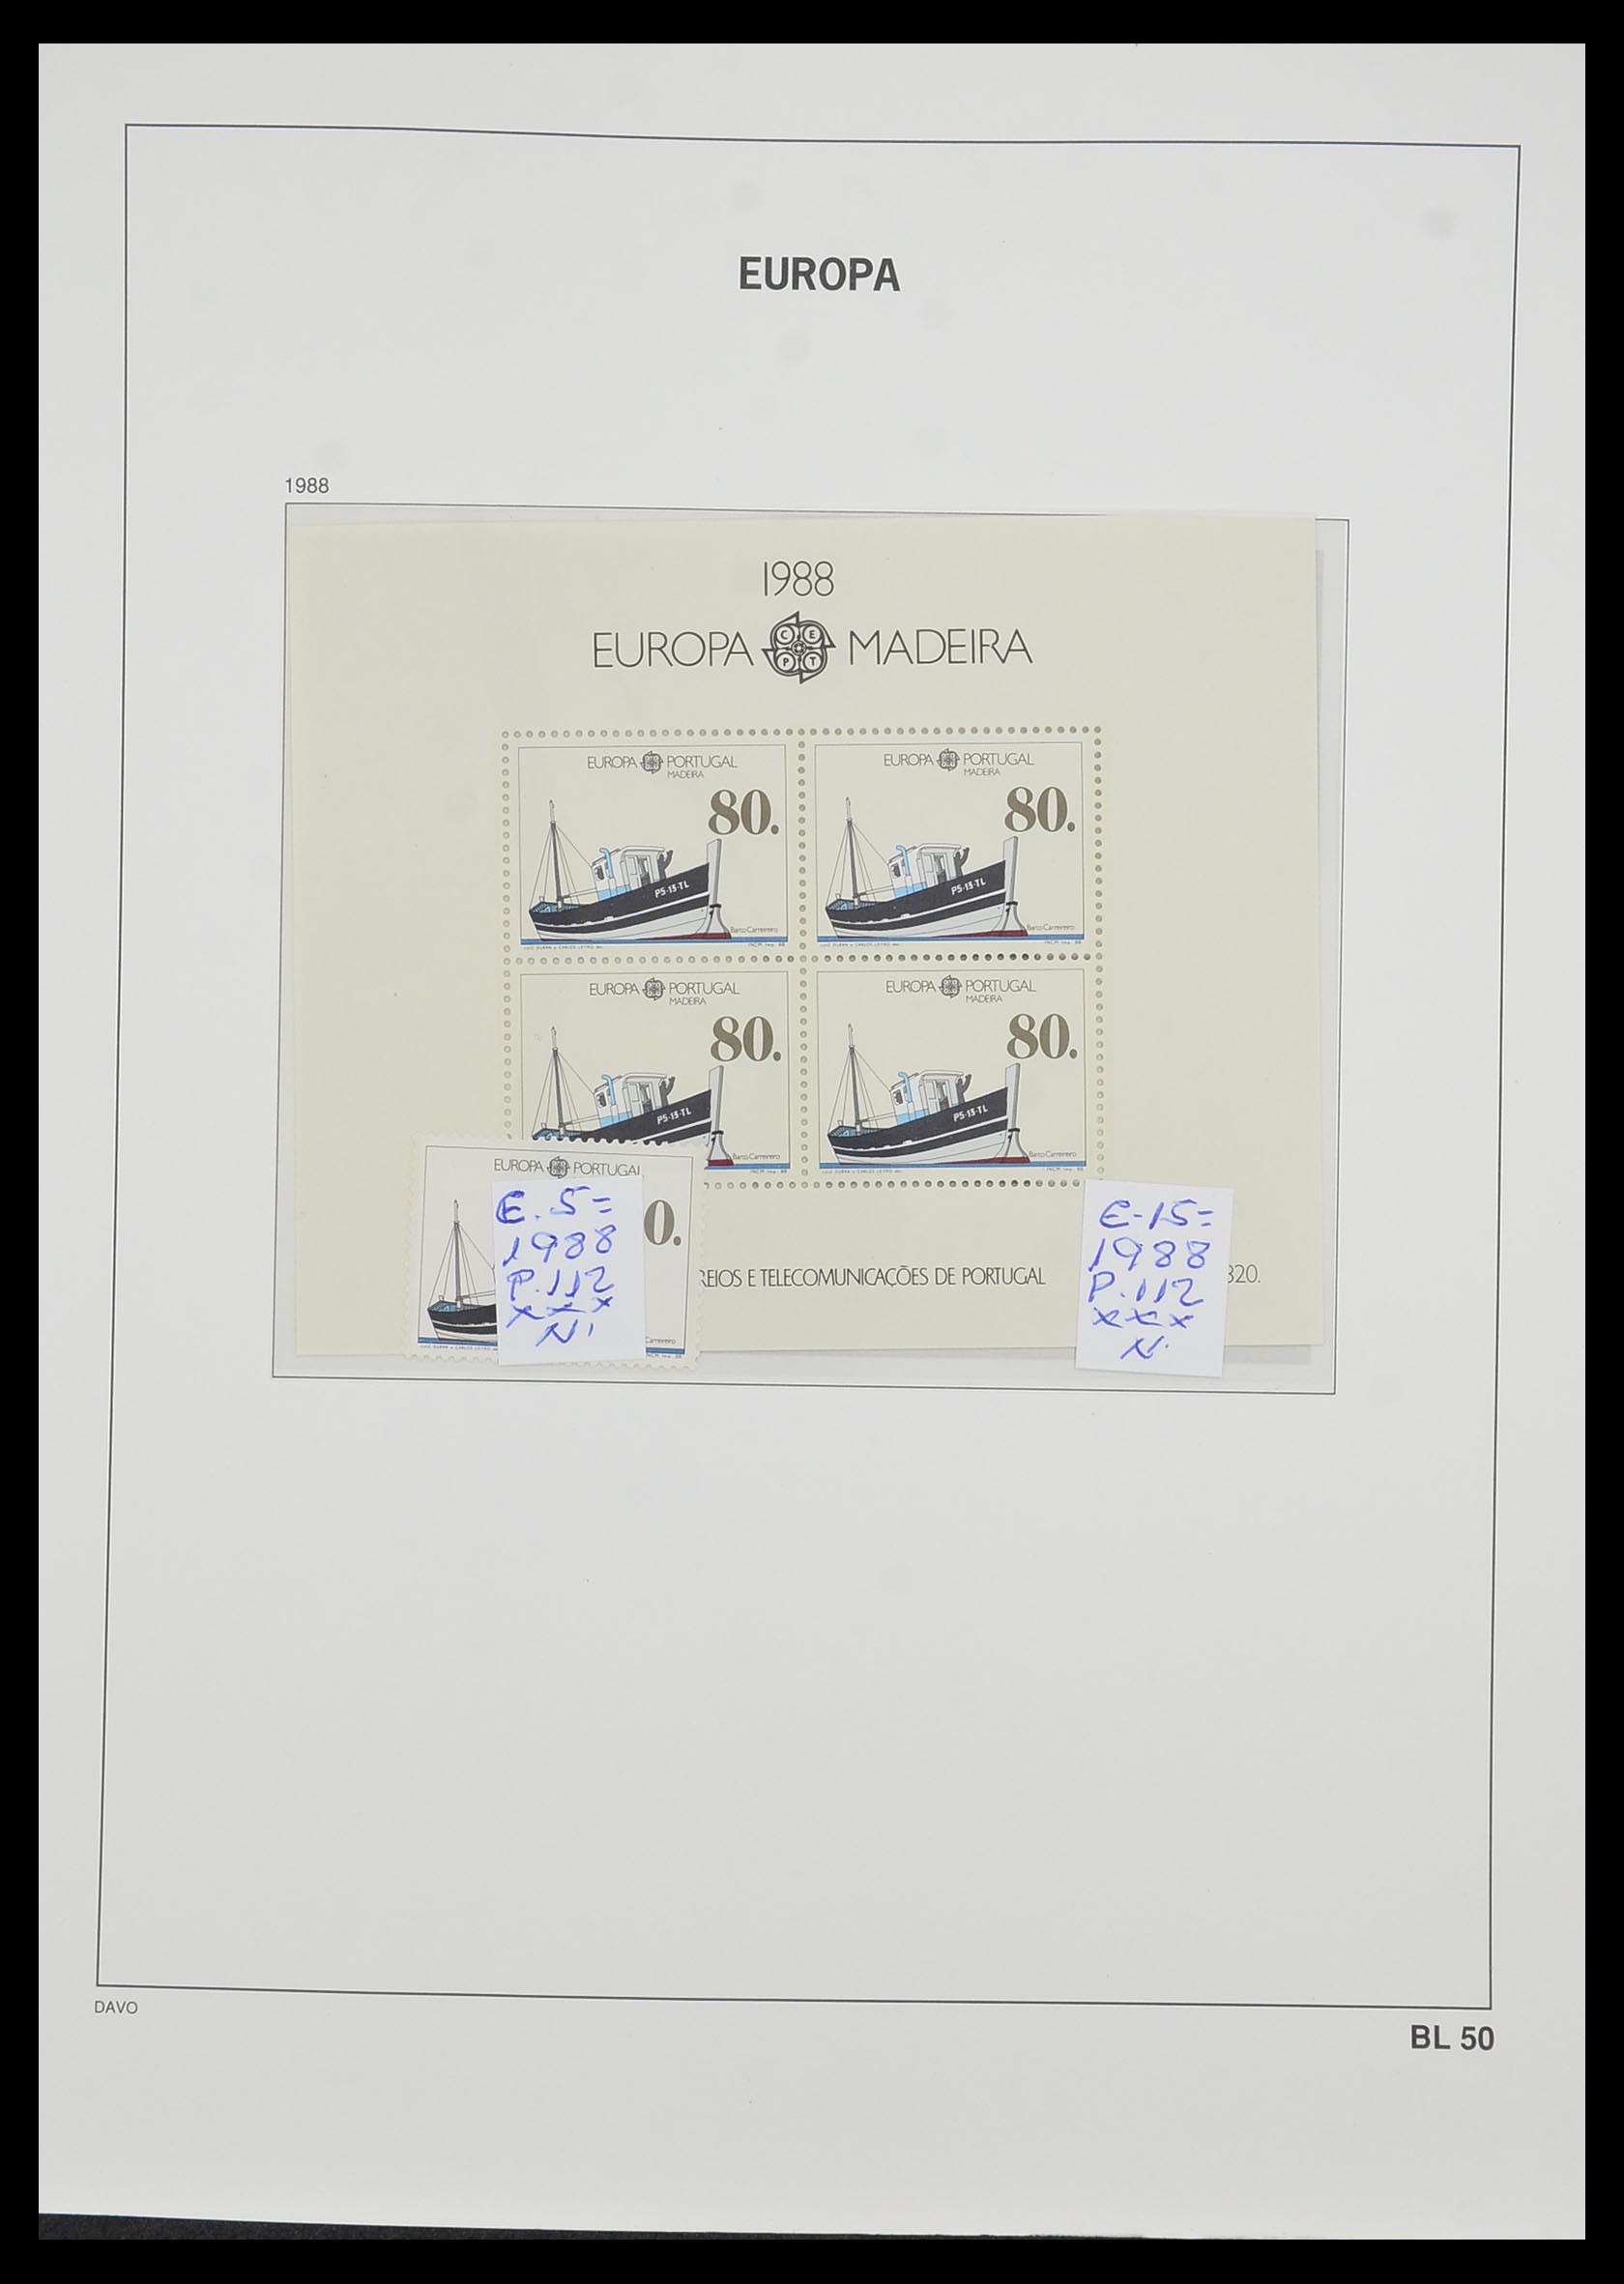 33985 051 - Stamp collection 33985 Europa CEPT souvenir sheets 1974-2014.